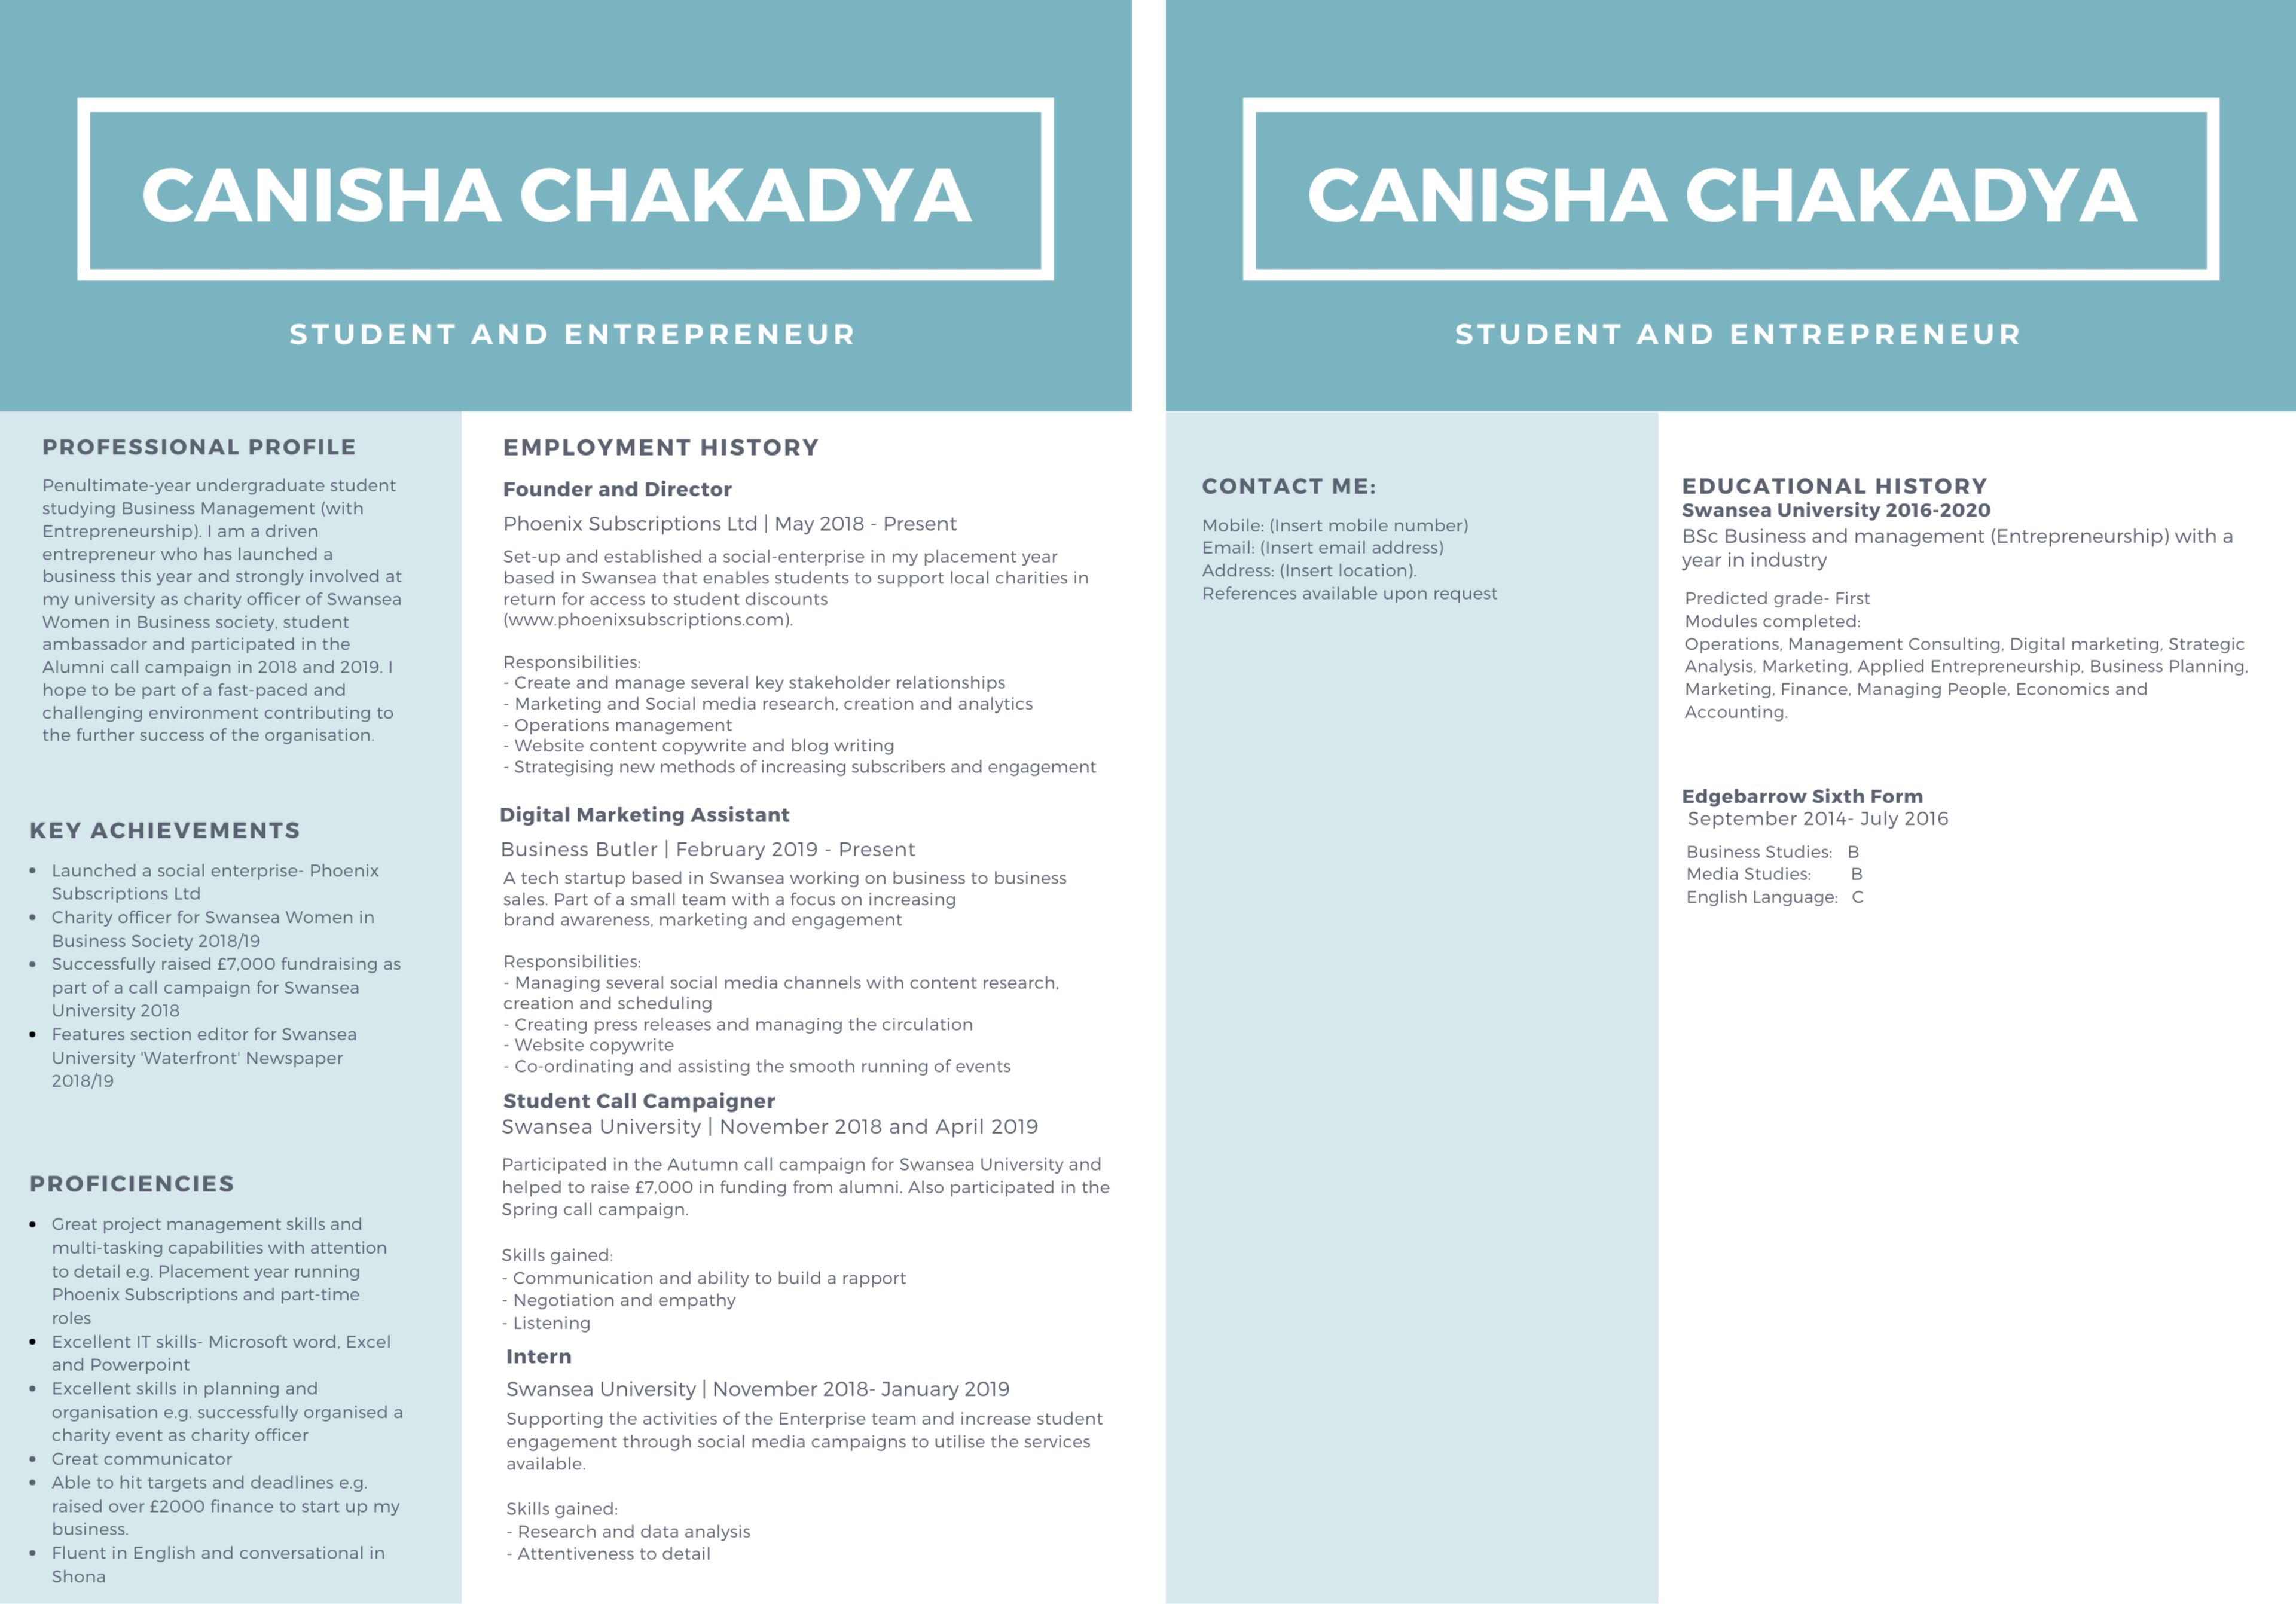 El currículum de Canisha Chakadya que llamó la atención de un reclutador de Google. / Cortesía de anisha Chakadya